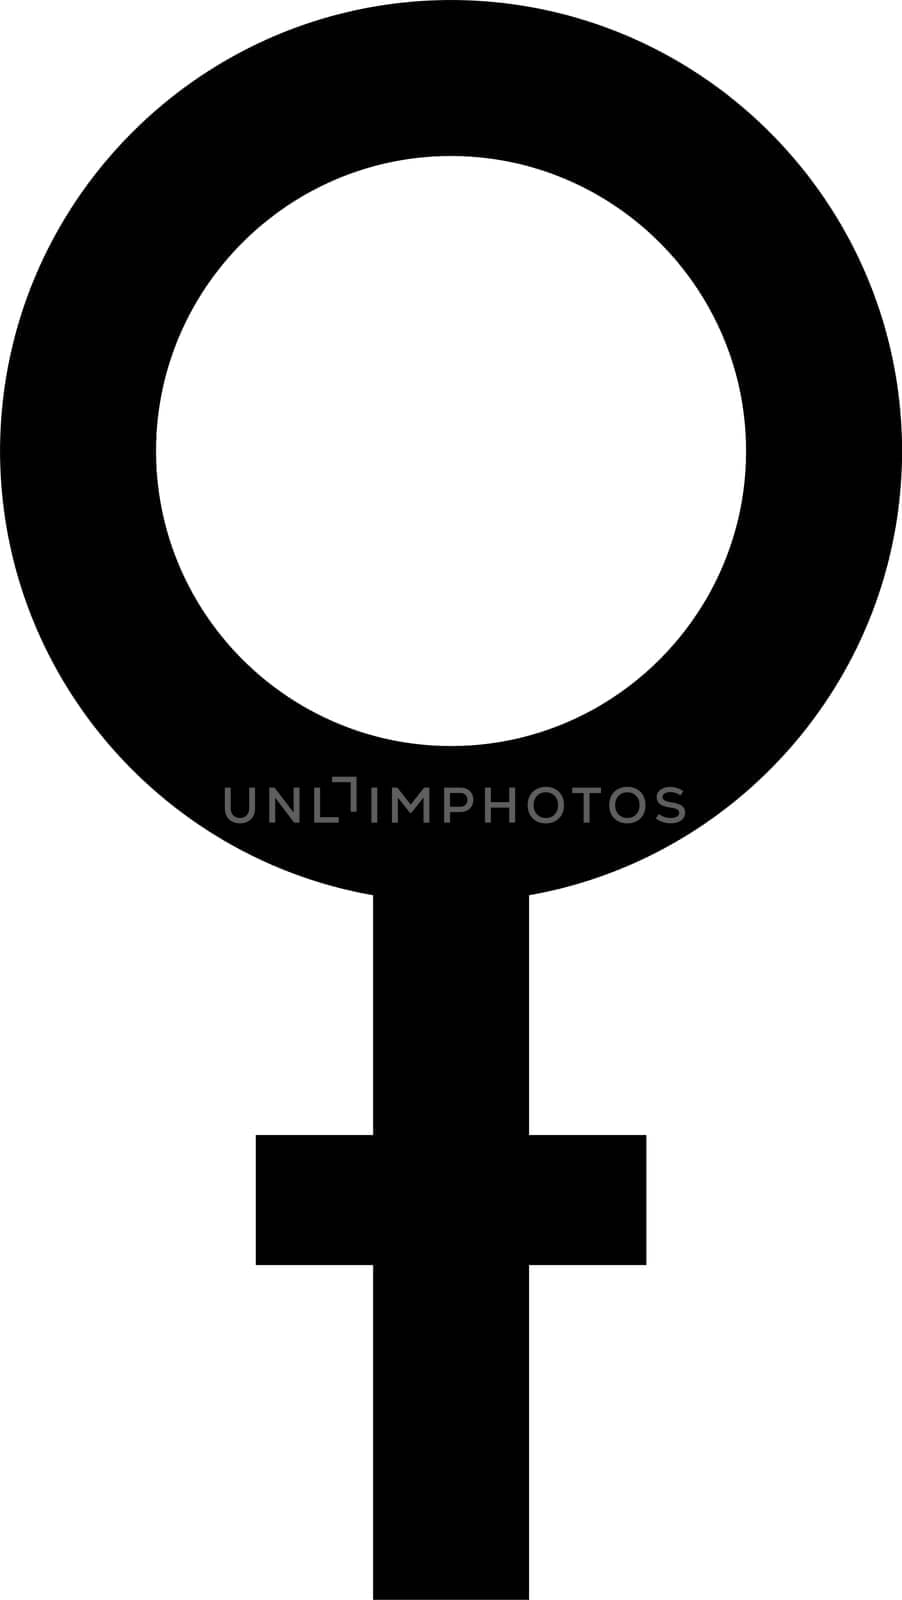 Sgn symbol gender equality Male, female transgender equality concept